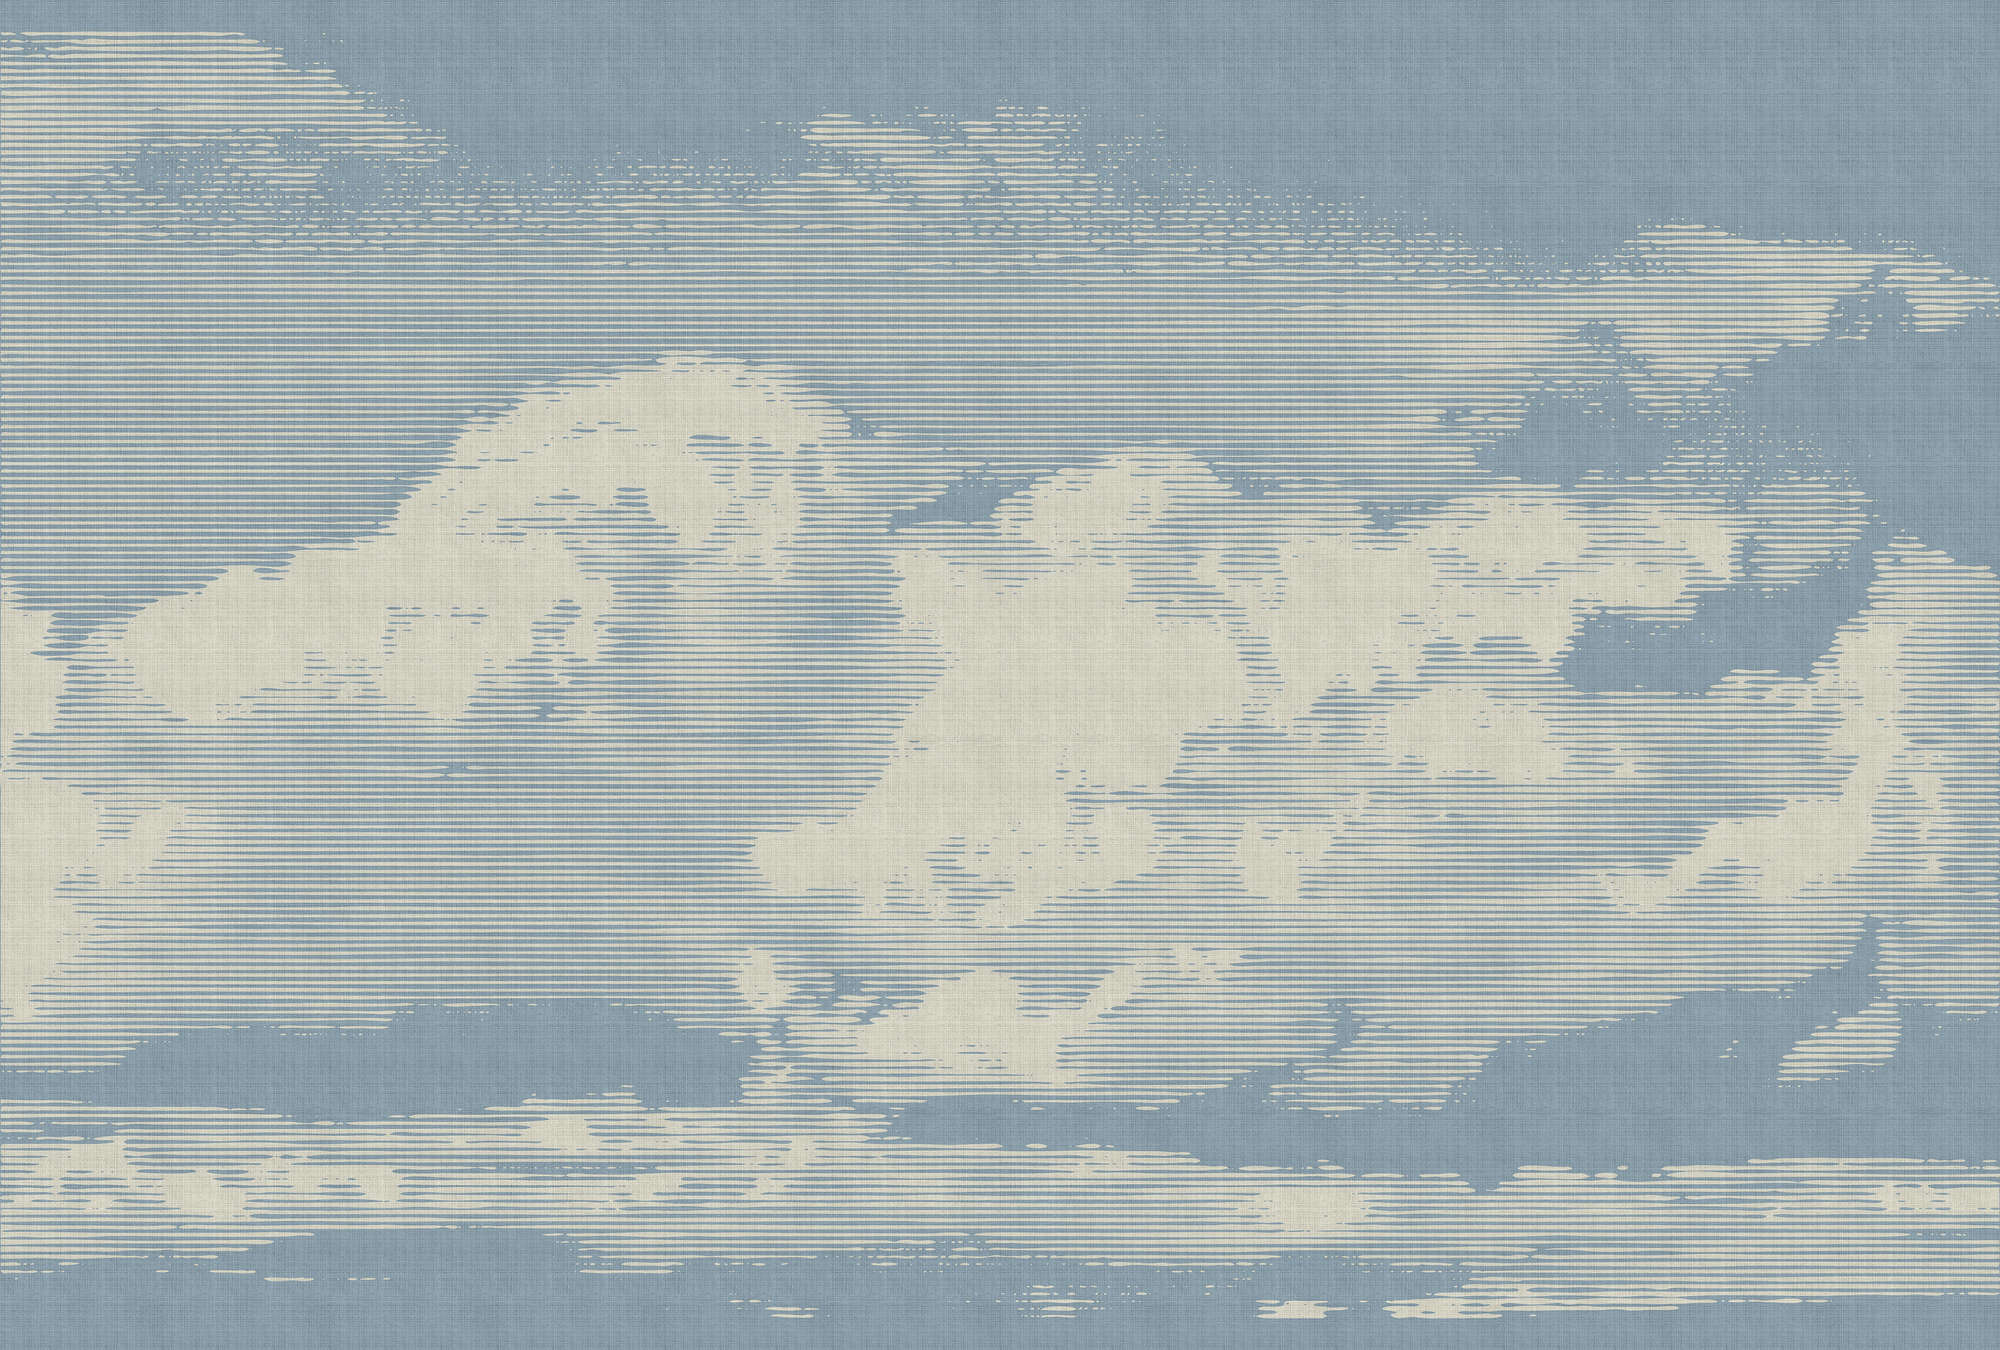             Clouds 1 - Carta da parati con motivo a nuvole in lino naturale - Beige, Blu | Perla in tessuto non tessuto liscio
        